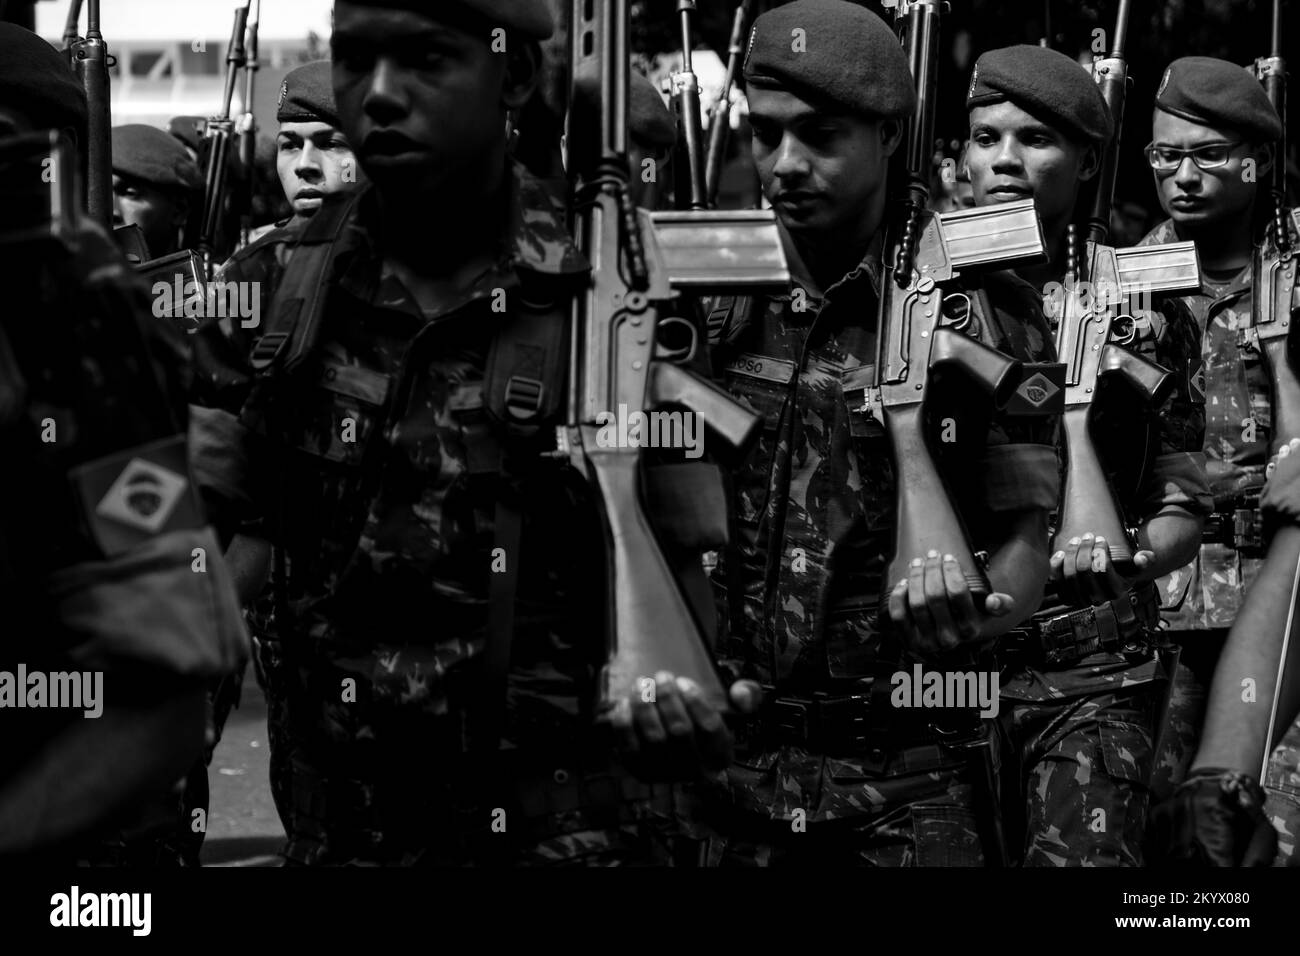 Salvador, Bahia, Brasile - 07 settembre 2016: Soldati dell'esercito marciano con fucili sulle loro spalle, il giorno dell'Indipendenza del Brasile nella città di Foto Stock